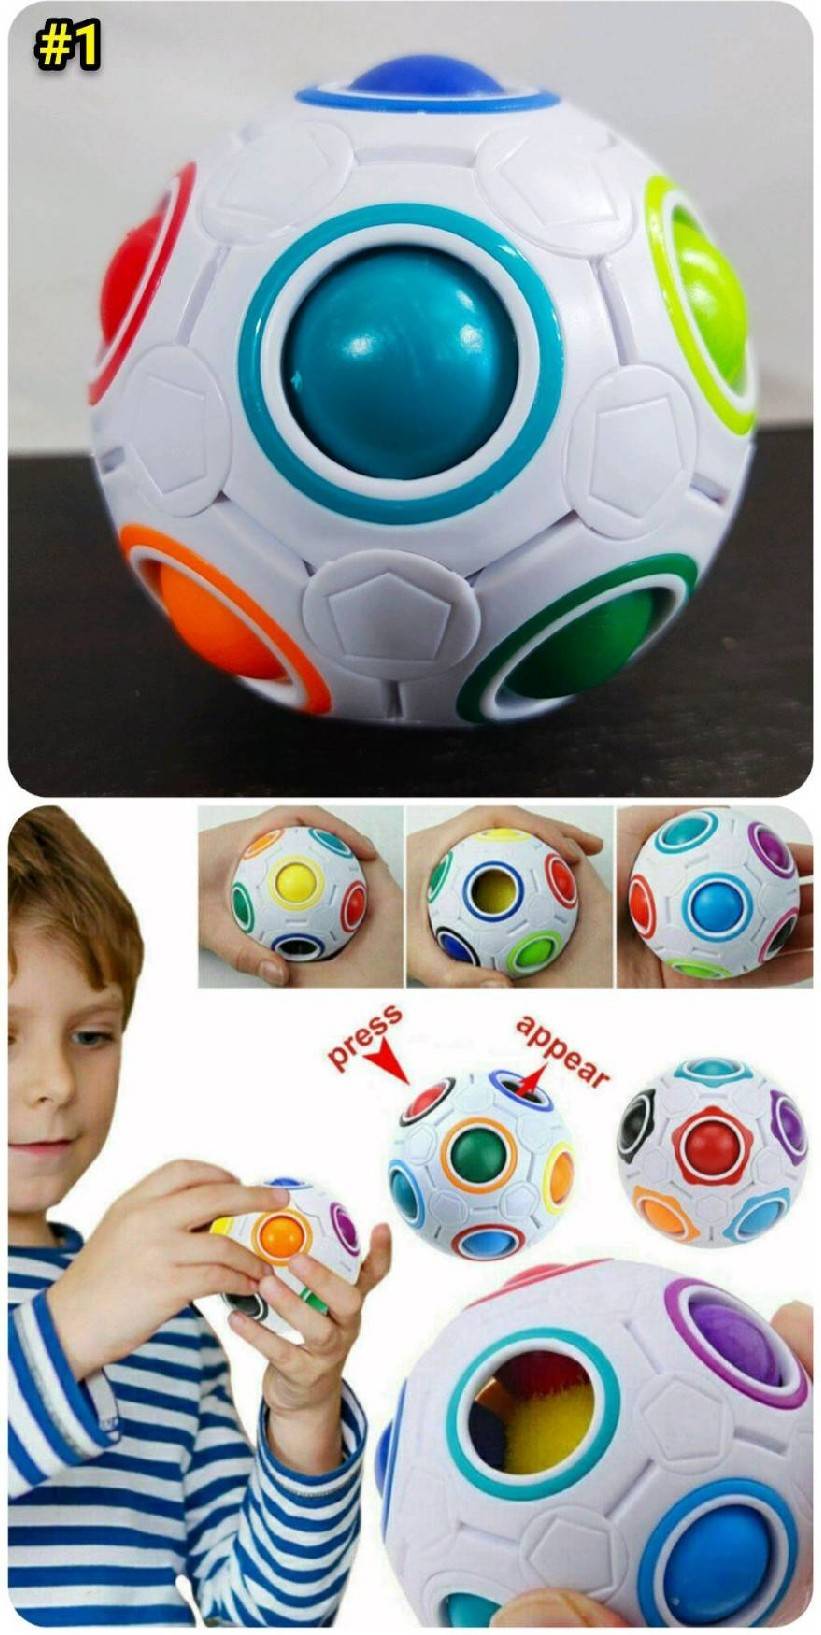 ของเล่นปริศนาลูกบอล ย้ายสี ของเล่น สำหรับเด็กผู้ใหญ่ -AchiToys